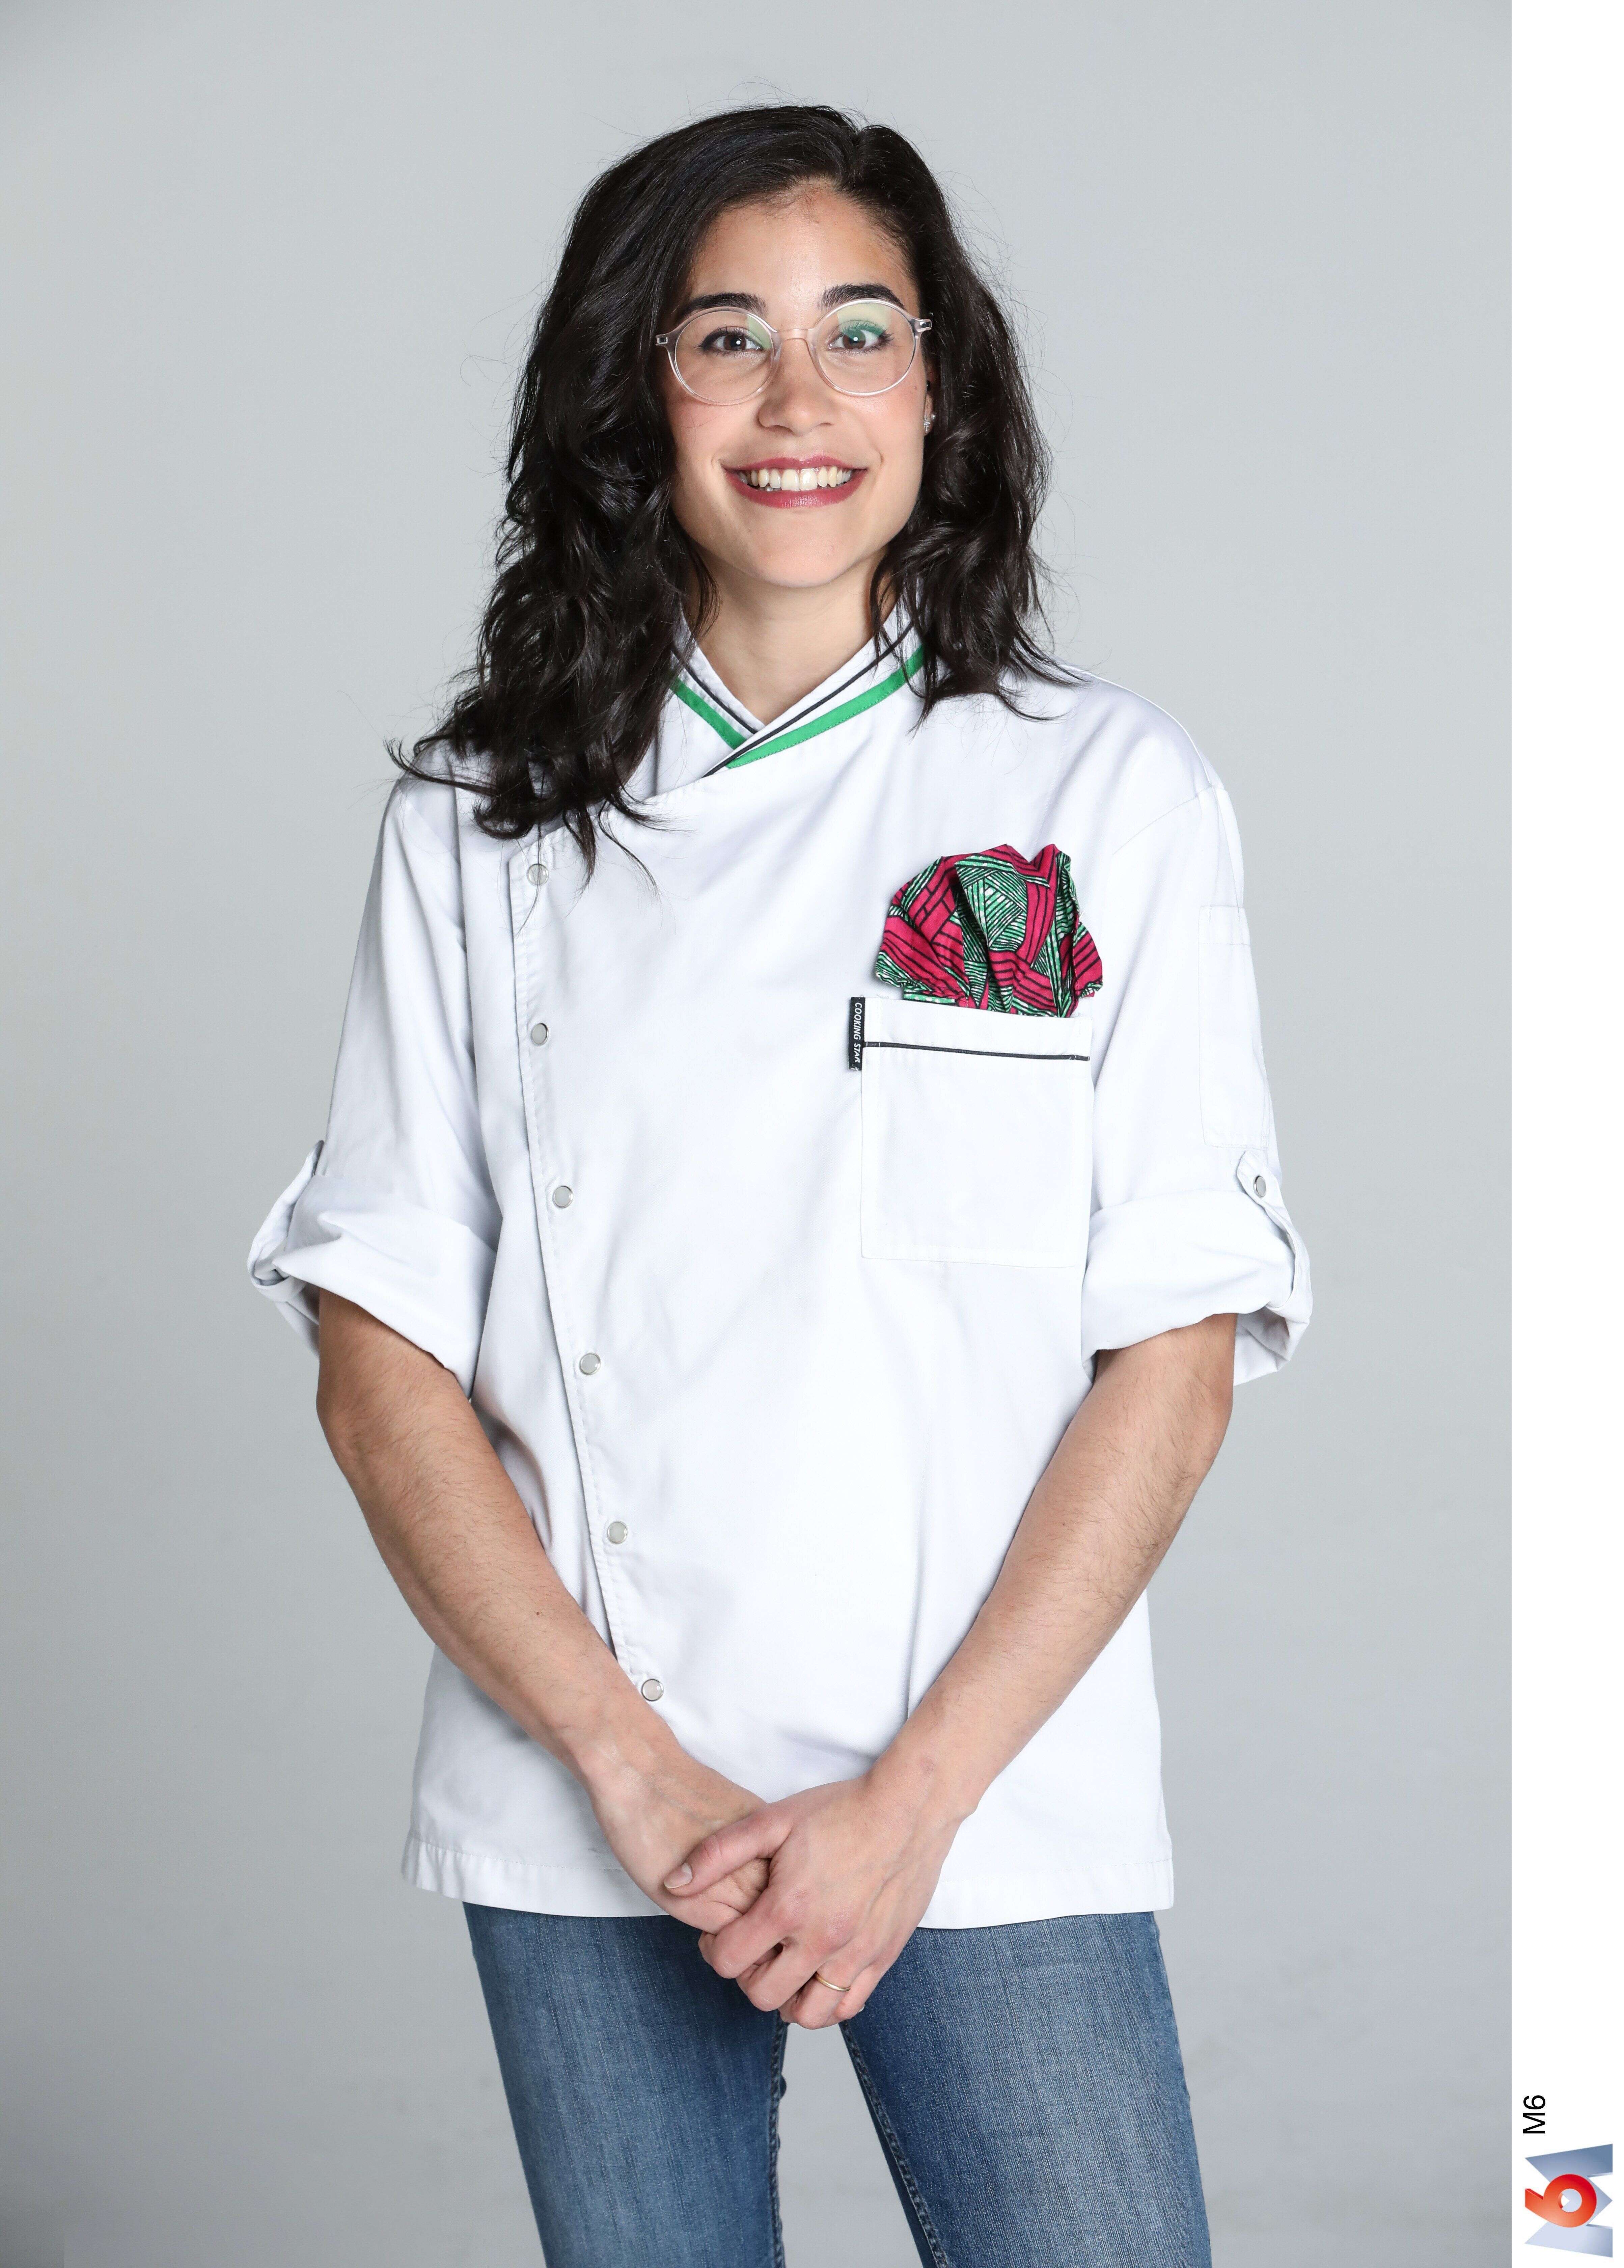 Justine Piluso, candidate éliminée de la compétition de “Top Chef” réagit